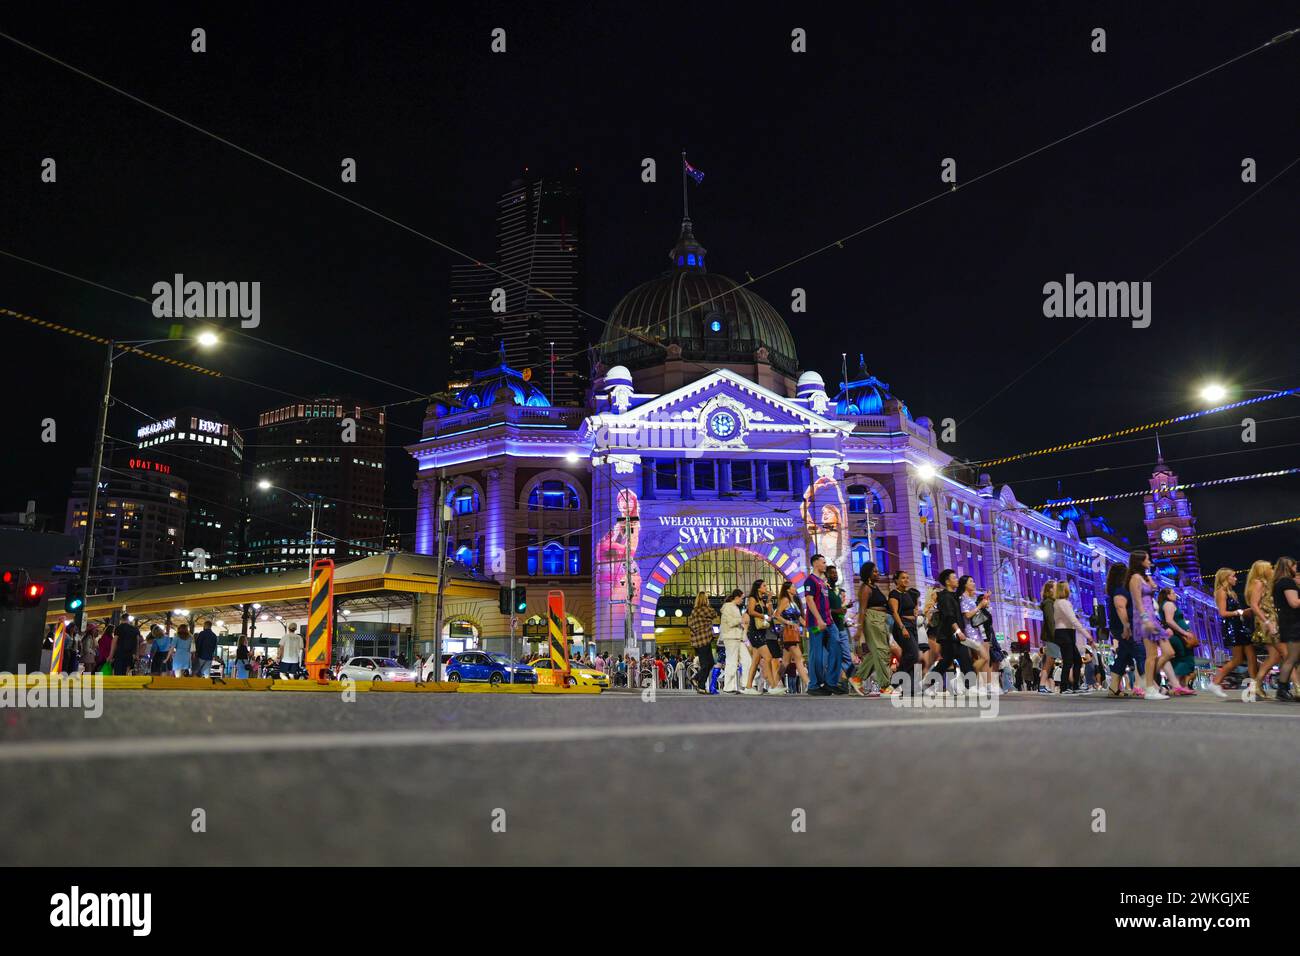 Eine Taylor Swift-Projektion wird auf der Flinders Street Station gezeigt, um Fans zu begrüßen, die an 3 rekordbrechenden Shows im MCG teilnahmen. Stockfoto